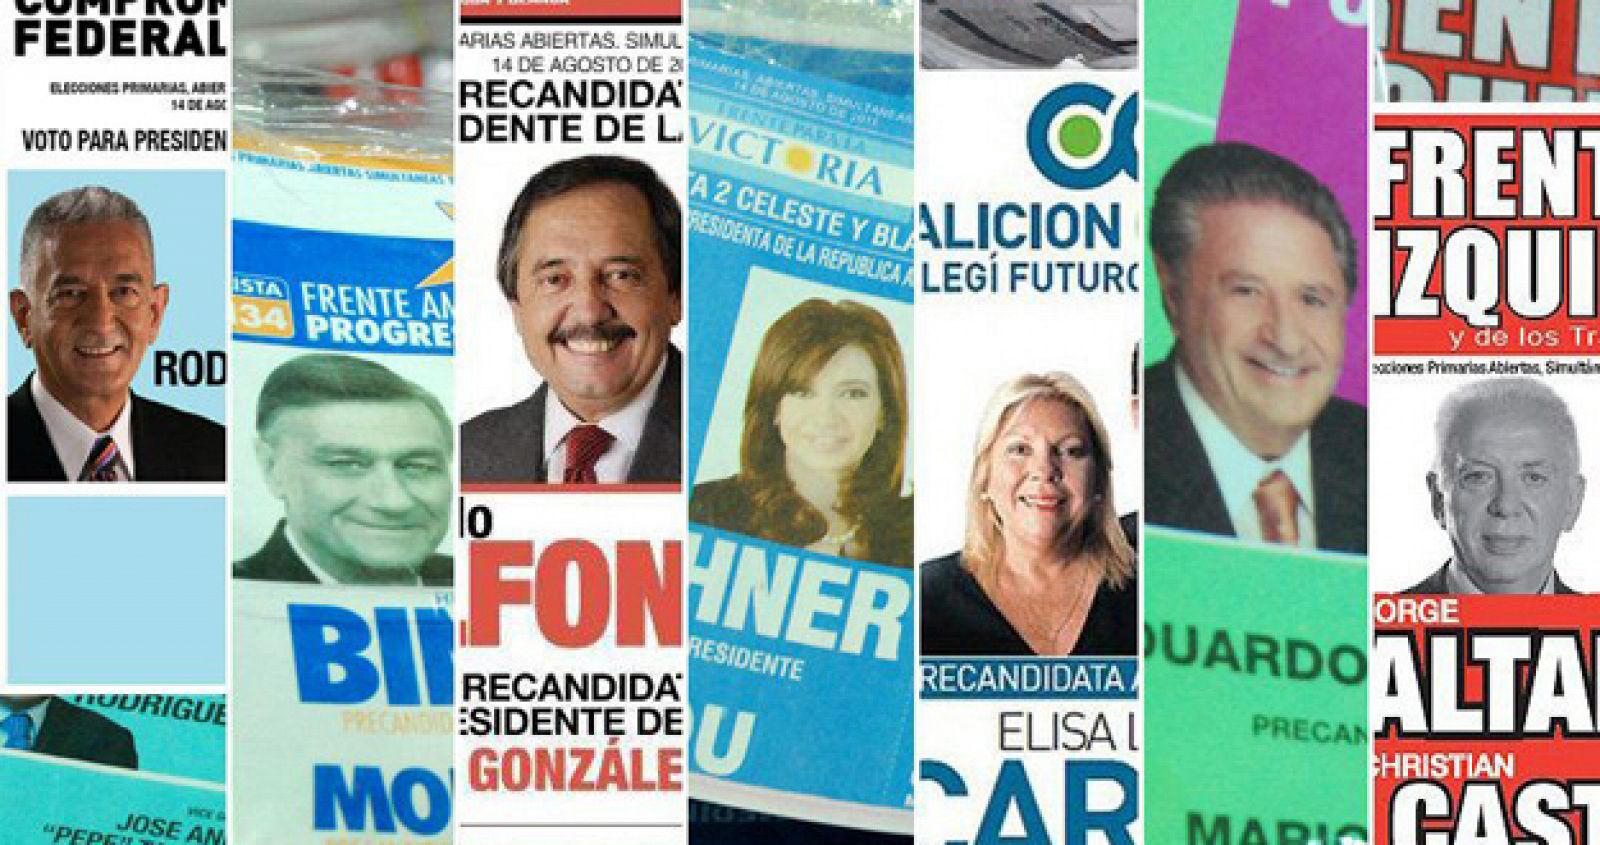 BOLETAS DE LOS PRECANDIDATOS PRESIDENCIALES EN ARGENTINA